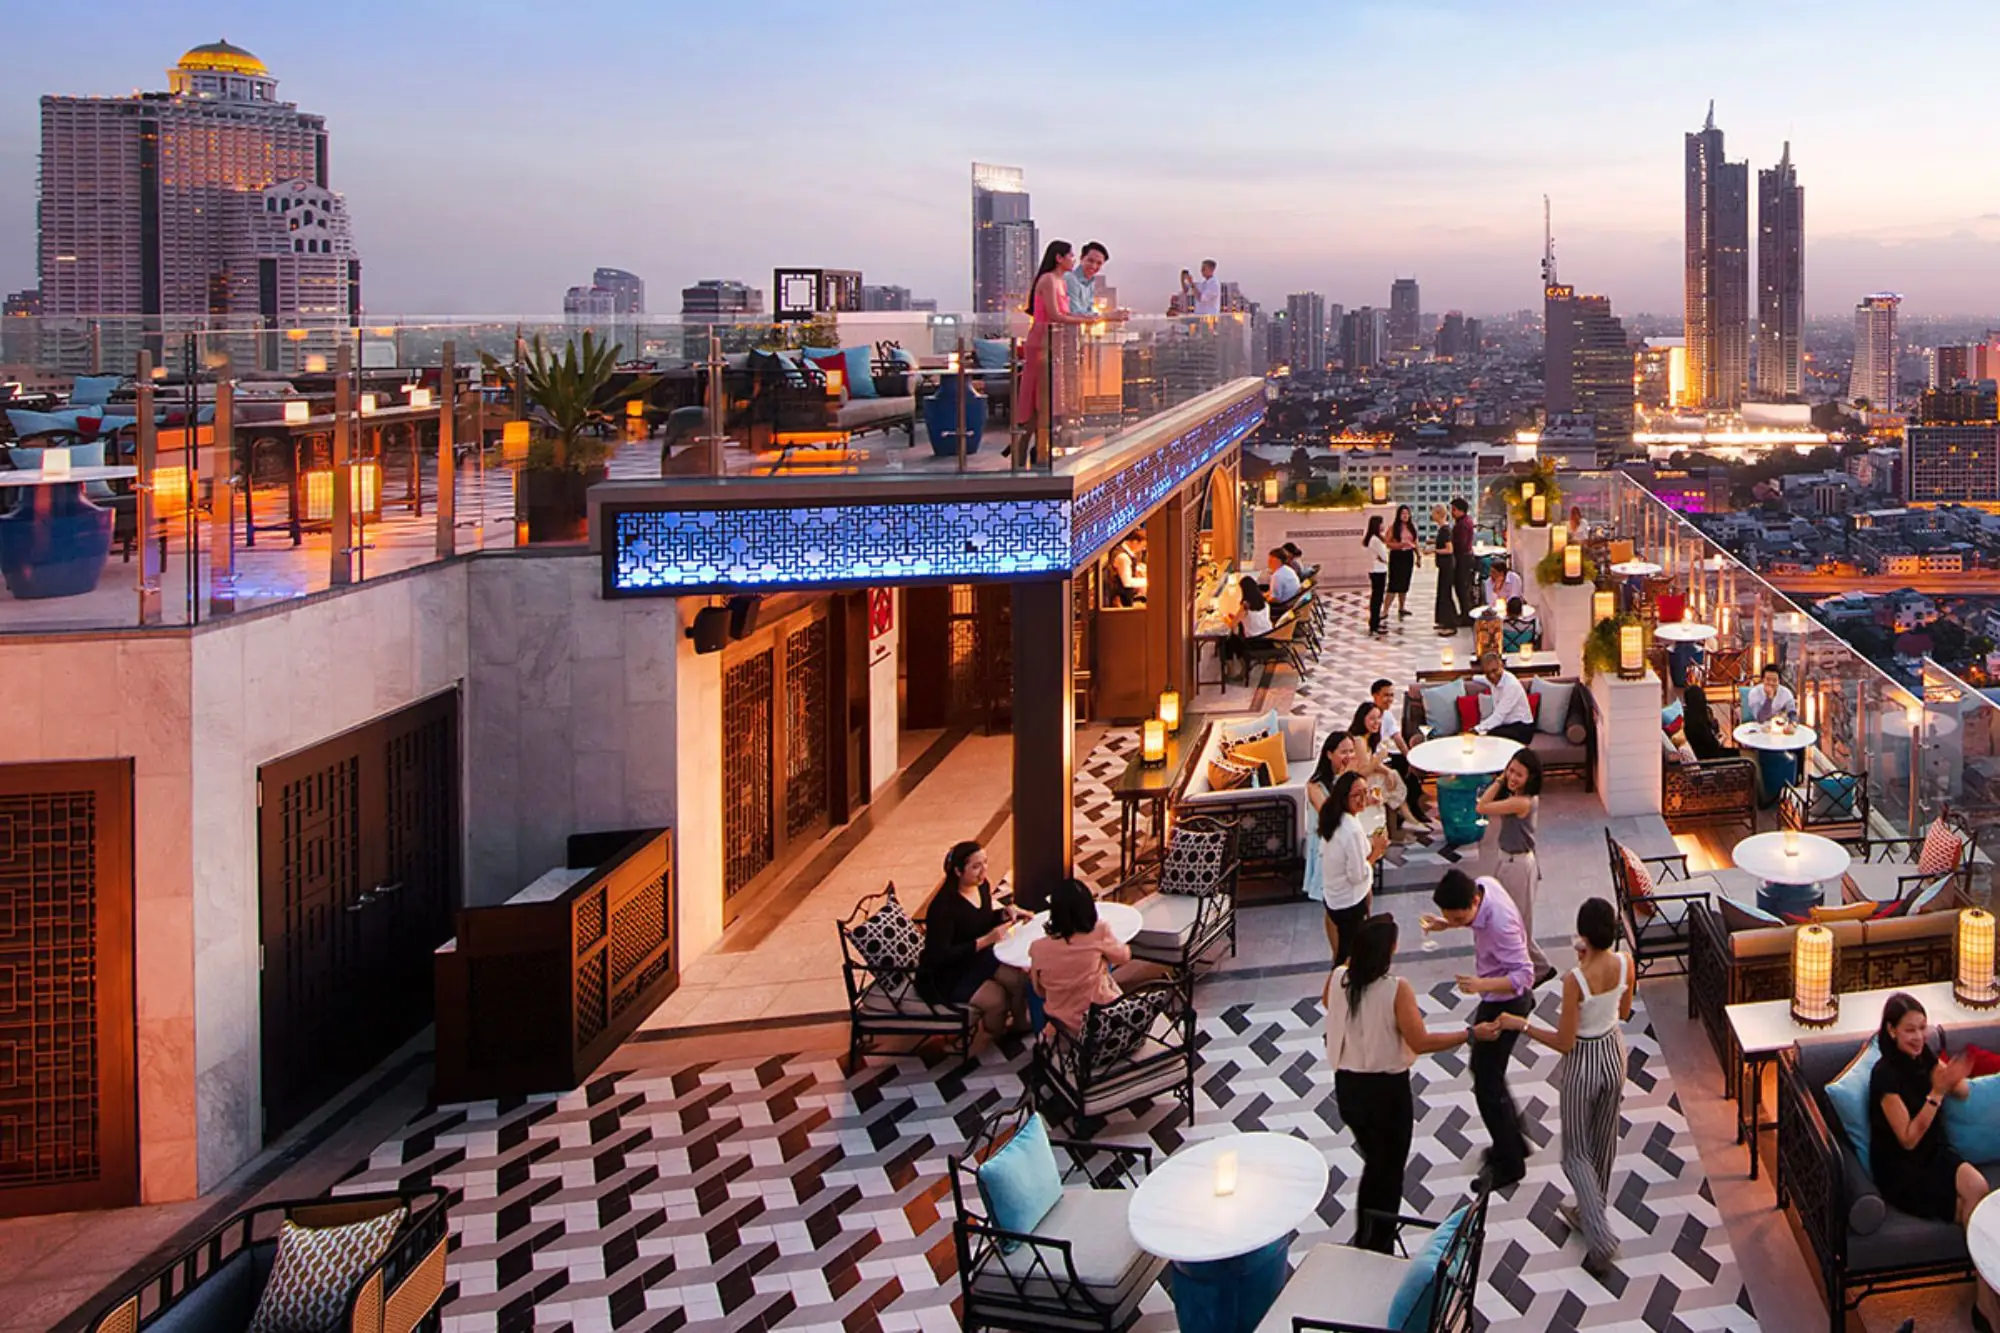 Yào Rooftop Bar位在33楼，装潢富有浓浓的中式风情（图片来源：Yào Rooftop Bar FB）